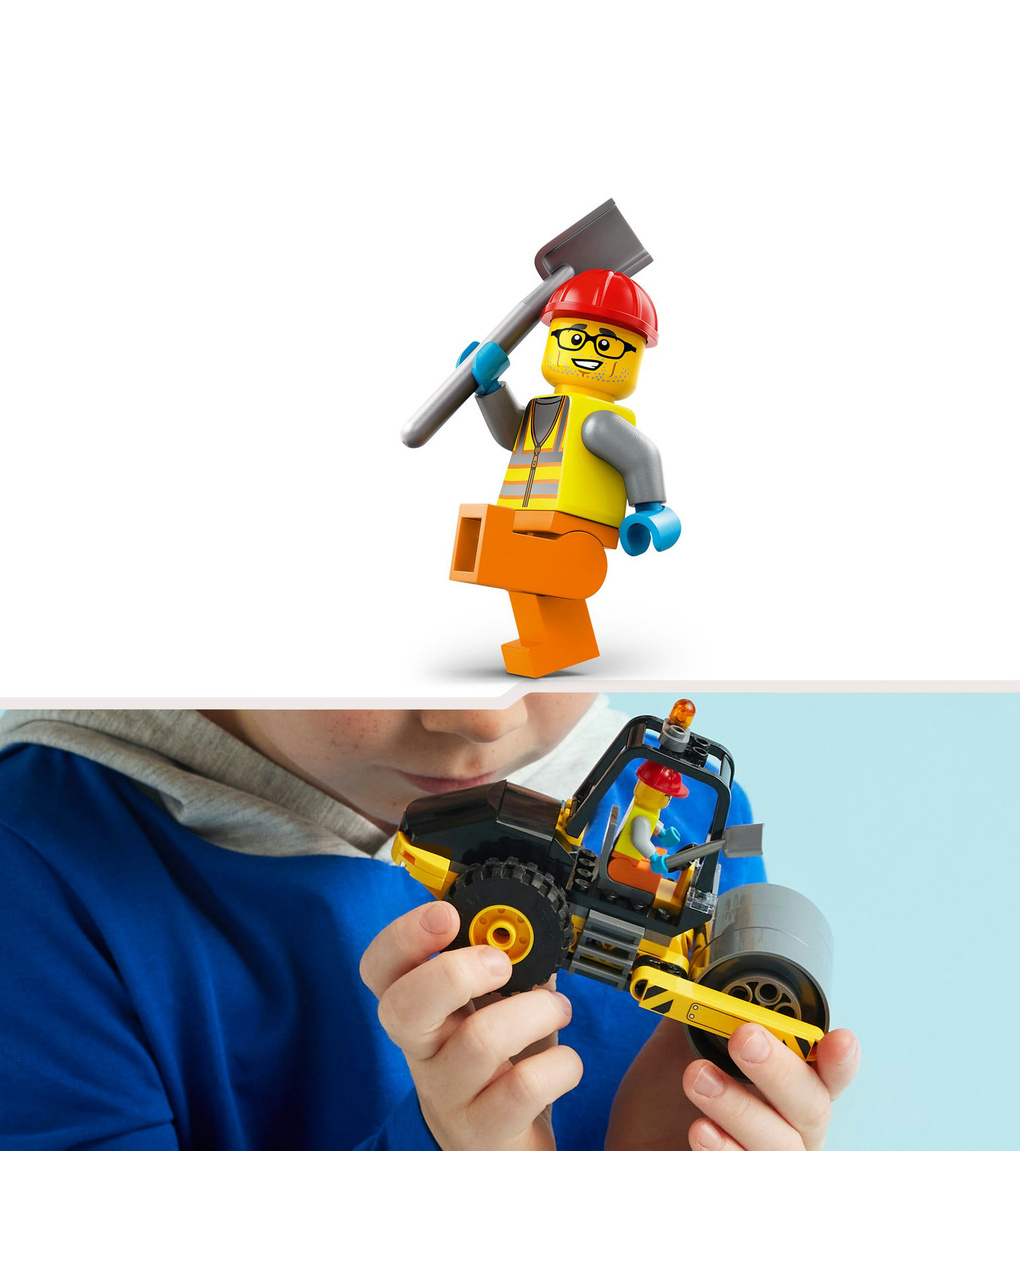 Rullo compressore - 60401 - lego city - LEGO